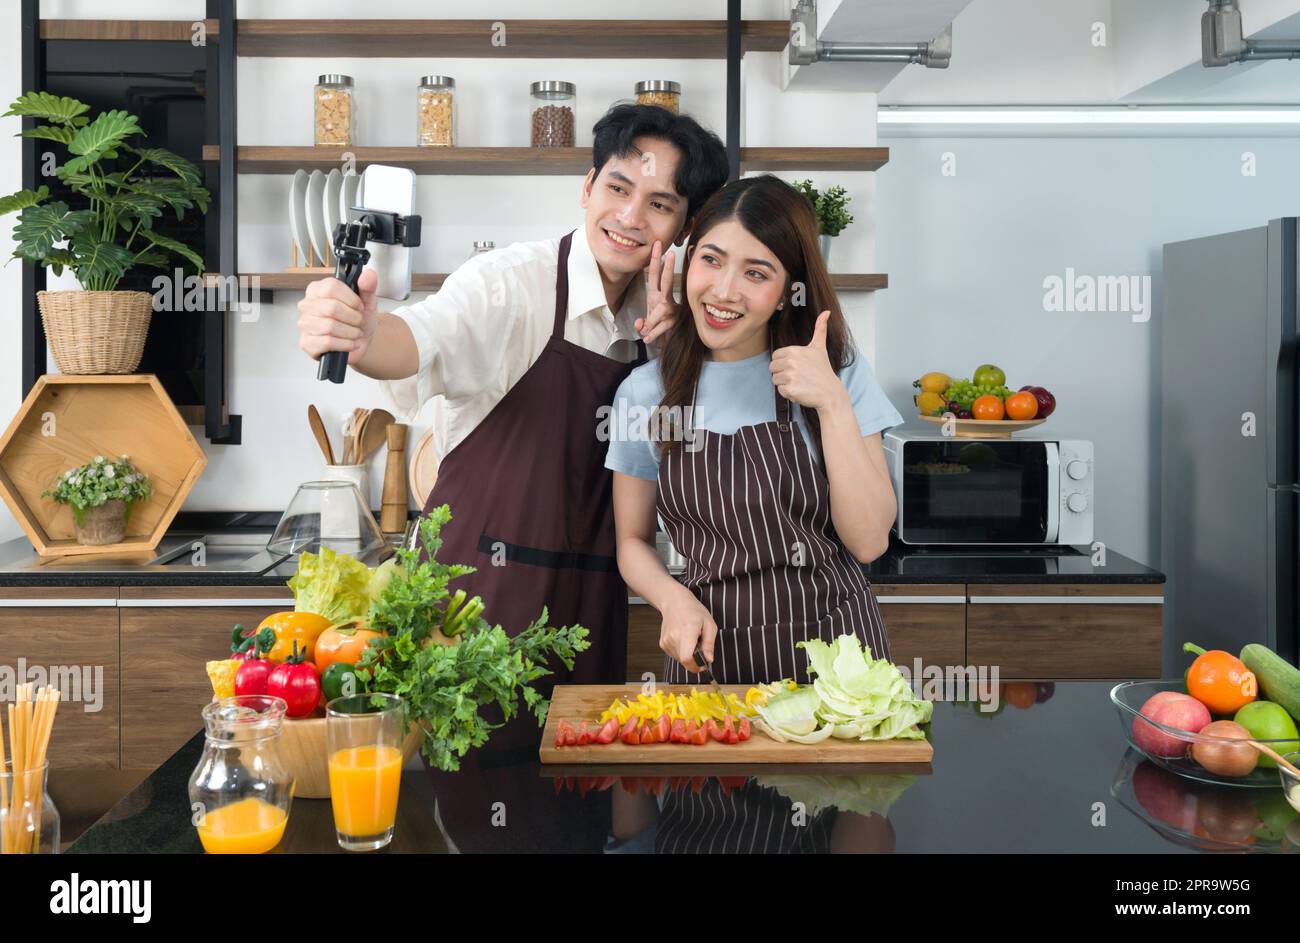 Asiatisches Paar verbringt Zeit zusammen in der Küche. Junge Frau in Schürze kocht Salatgericht, während sein Freund ein Video für einen sozialen Blogger aufnimmt. Moderner Lebensstil, Beziehung und Aktivität. Stockfoto